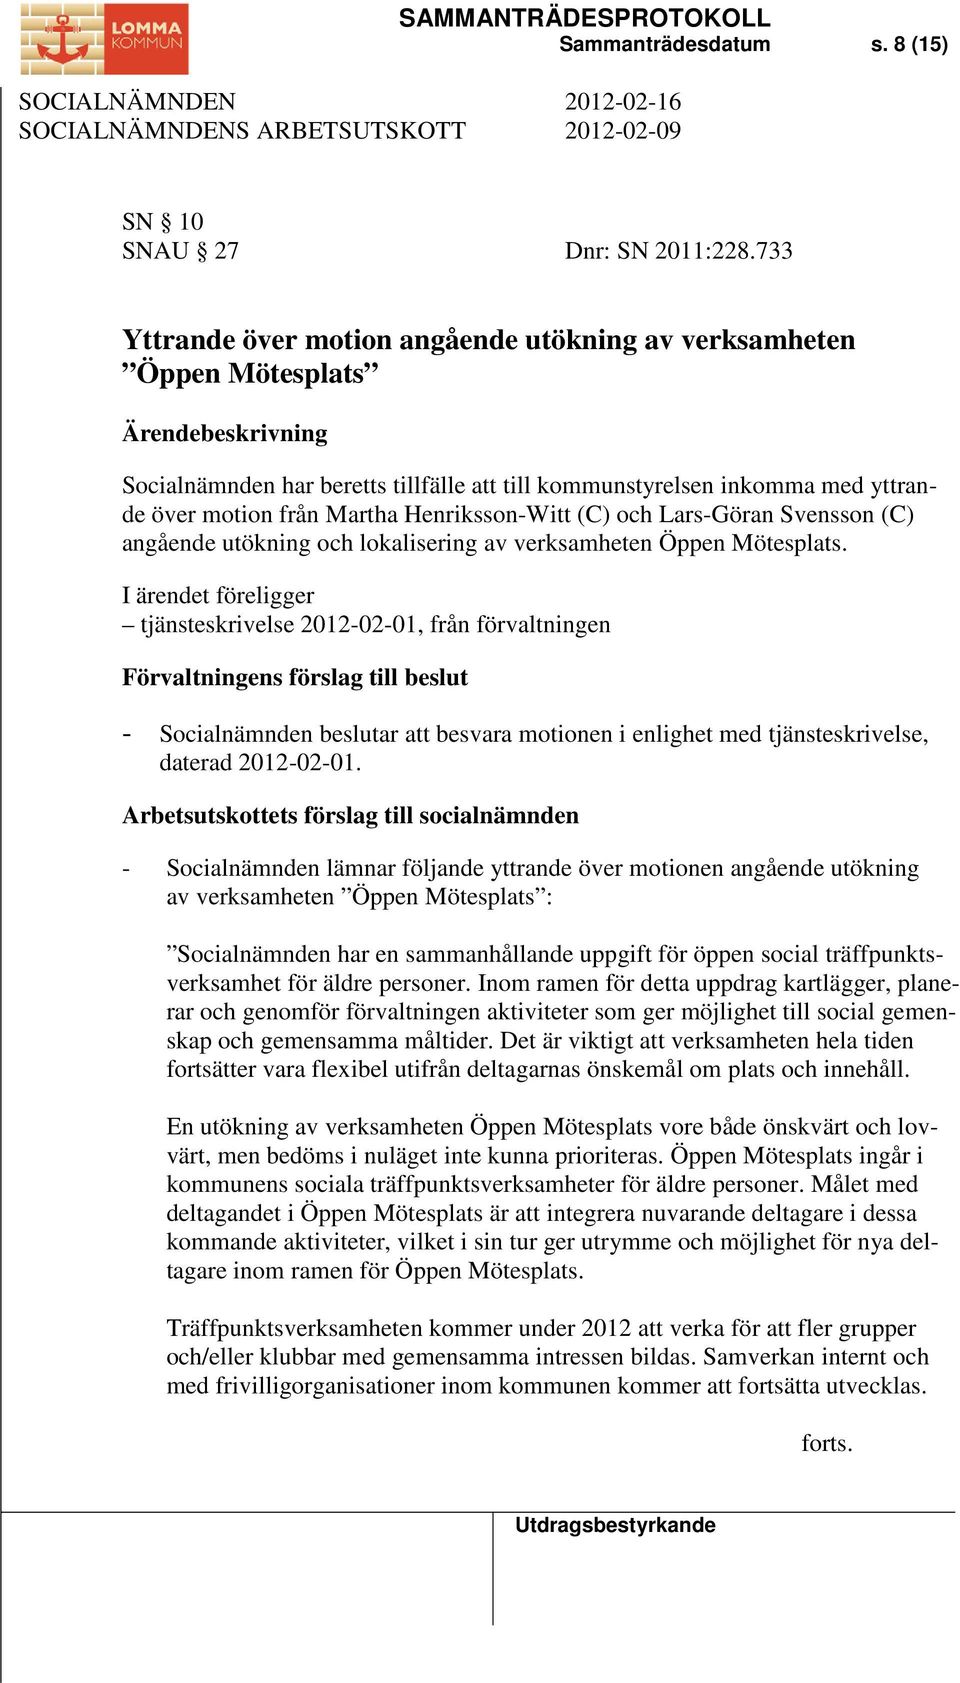 Henriksson-Witt (C) och Lars-Göran Svensson (C) angående utökning och lokalisering av verksamheten Öppen Mötesplats.